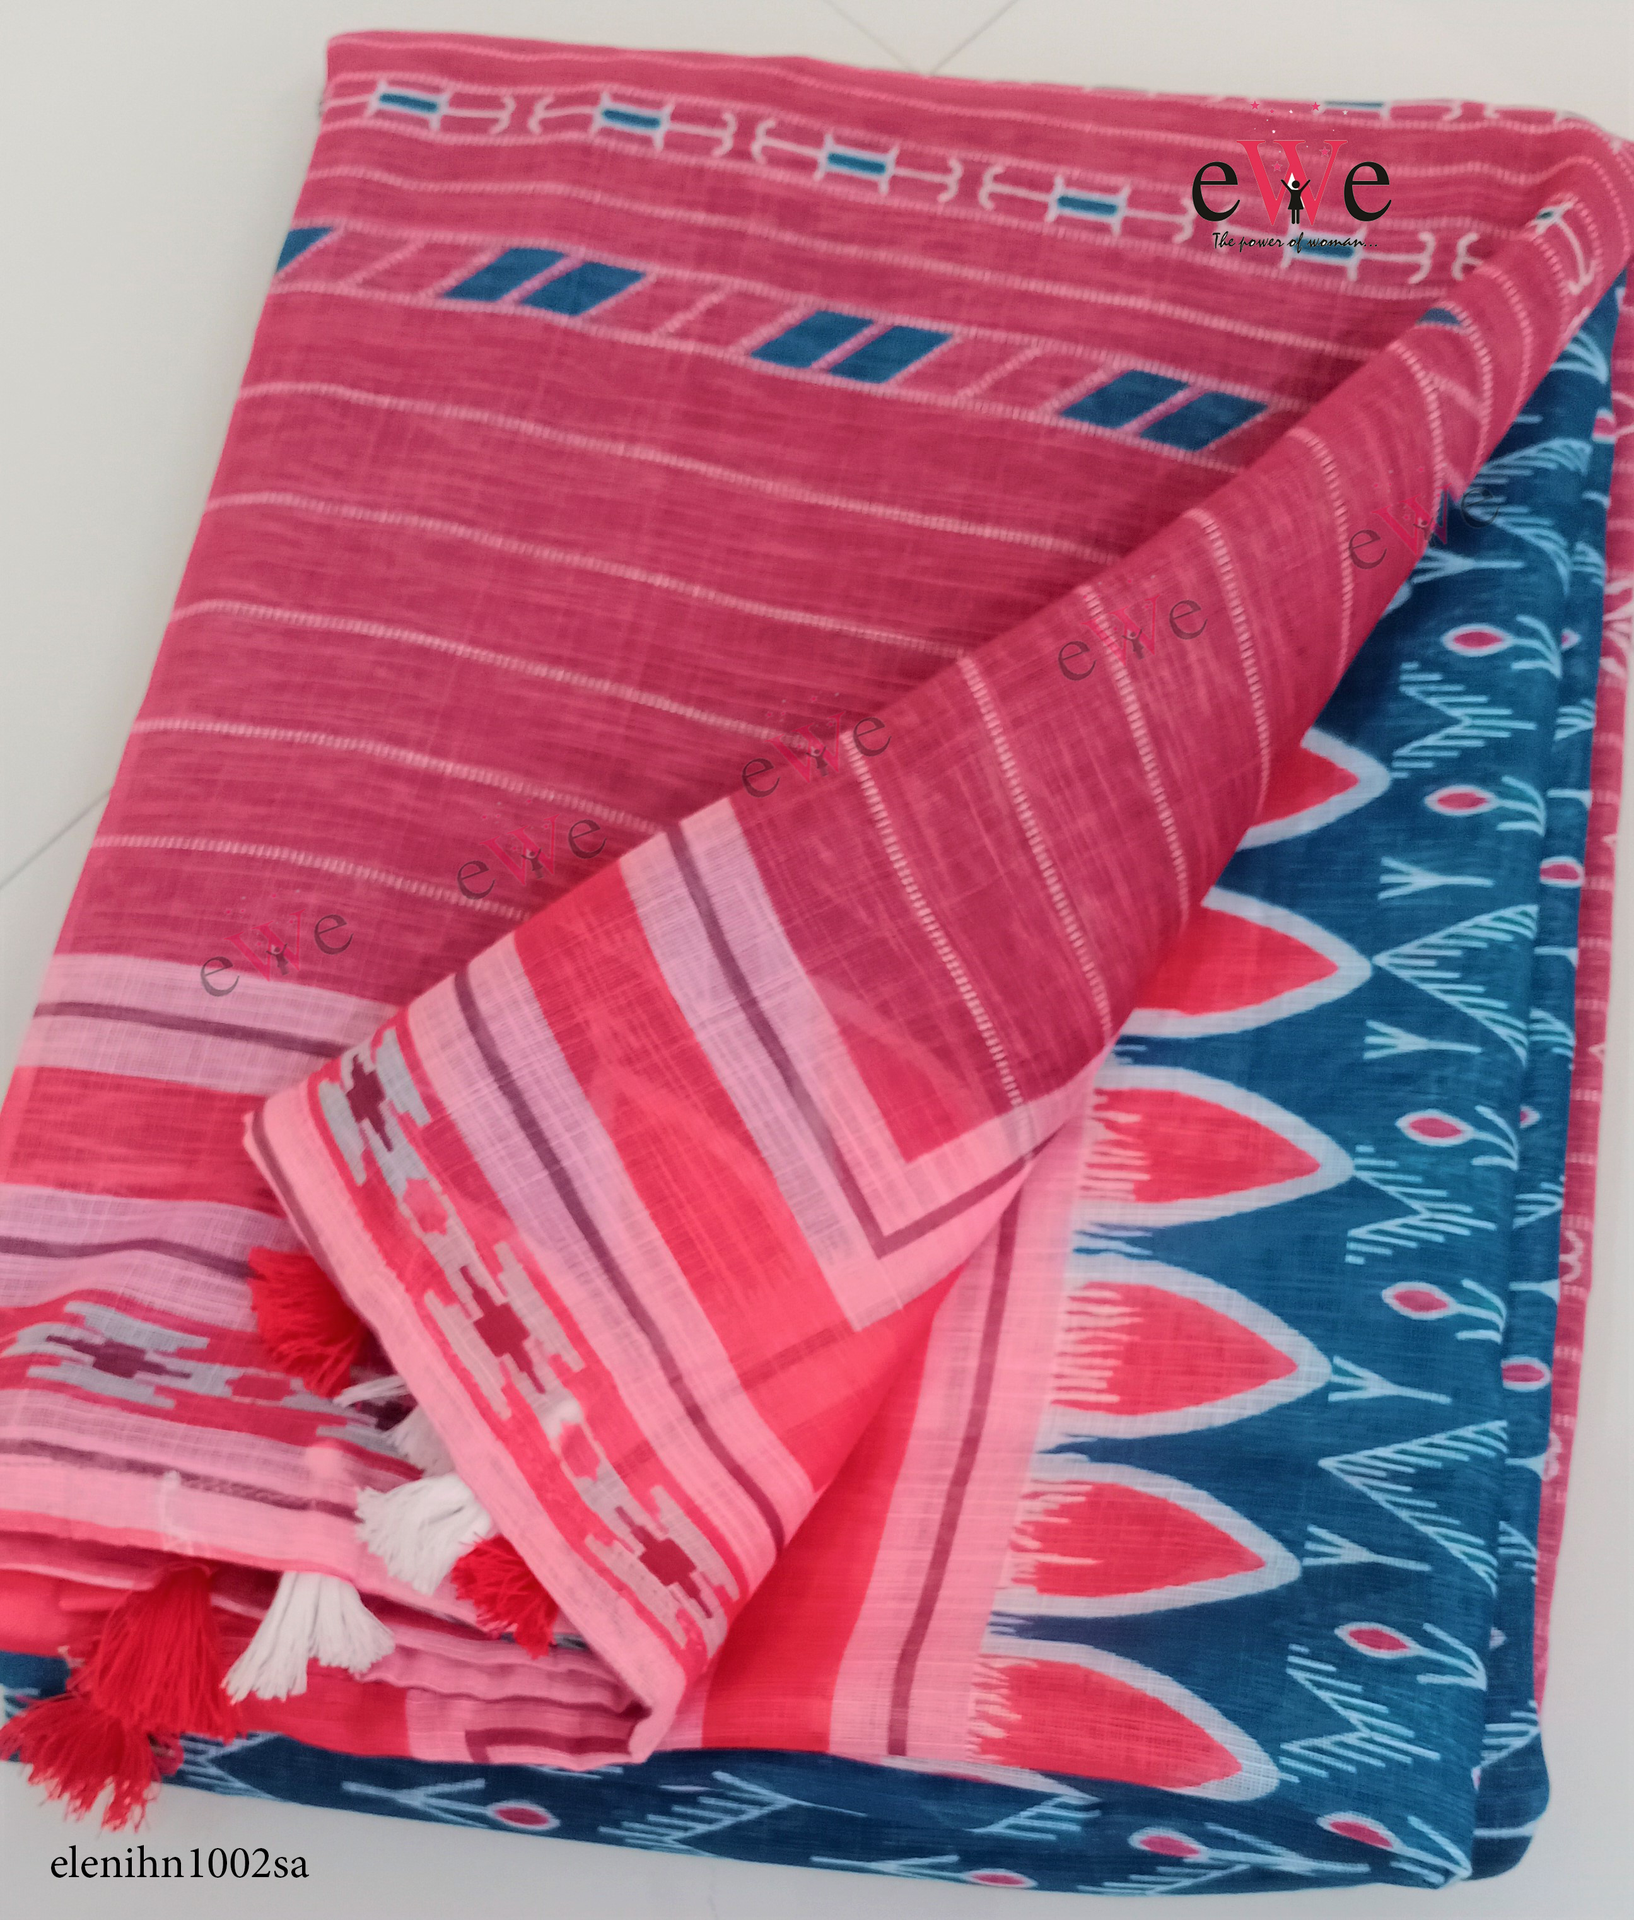 Blue &amp; Red Handloom Linen saree with ikkat design